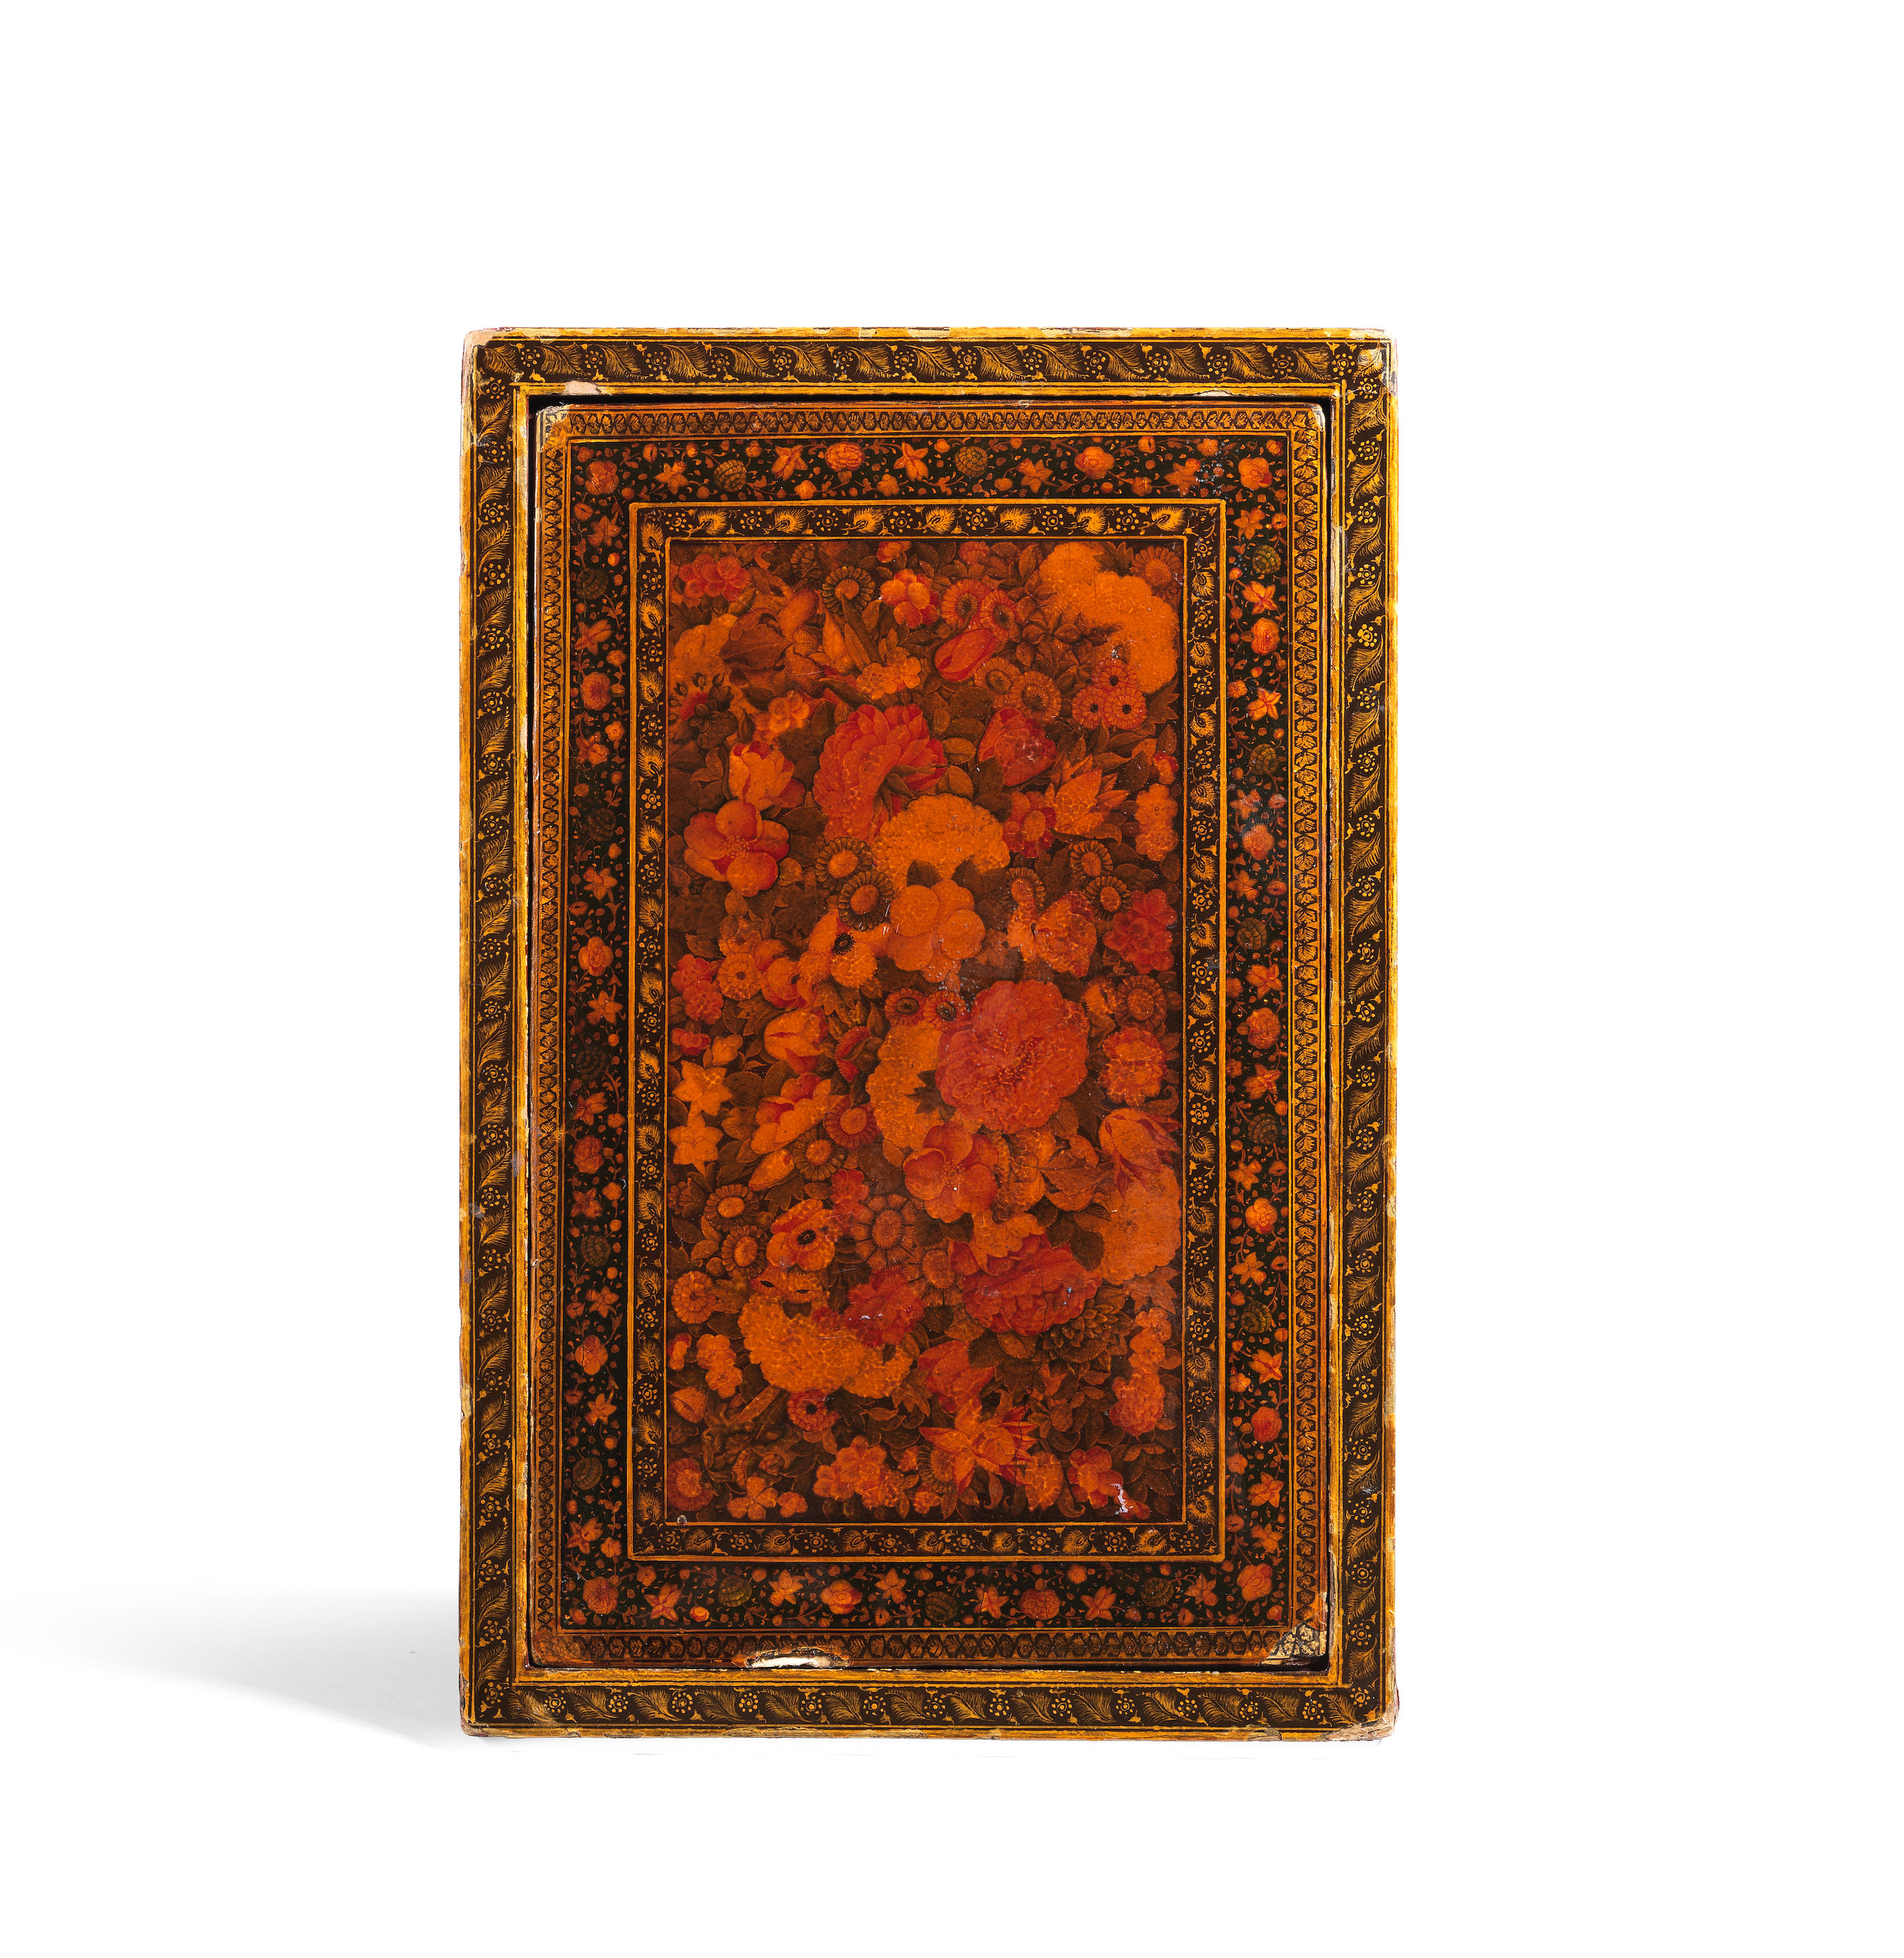 Bonhams A Large Qajar Lacquer Papier Mâché Mirror Case Persia 19th Century